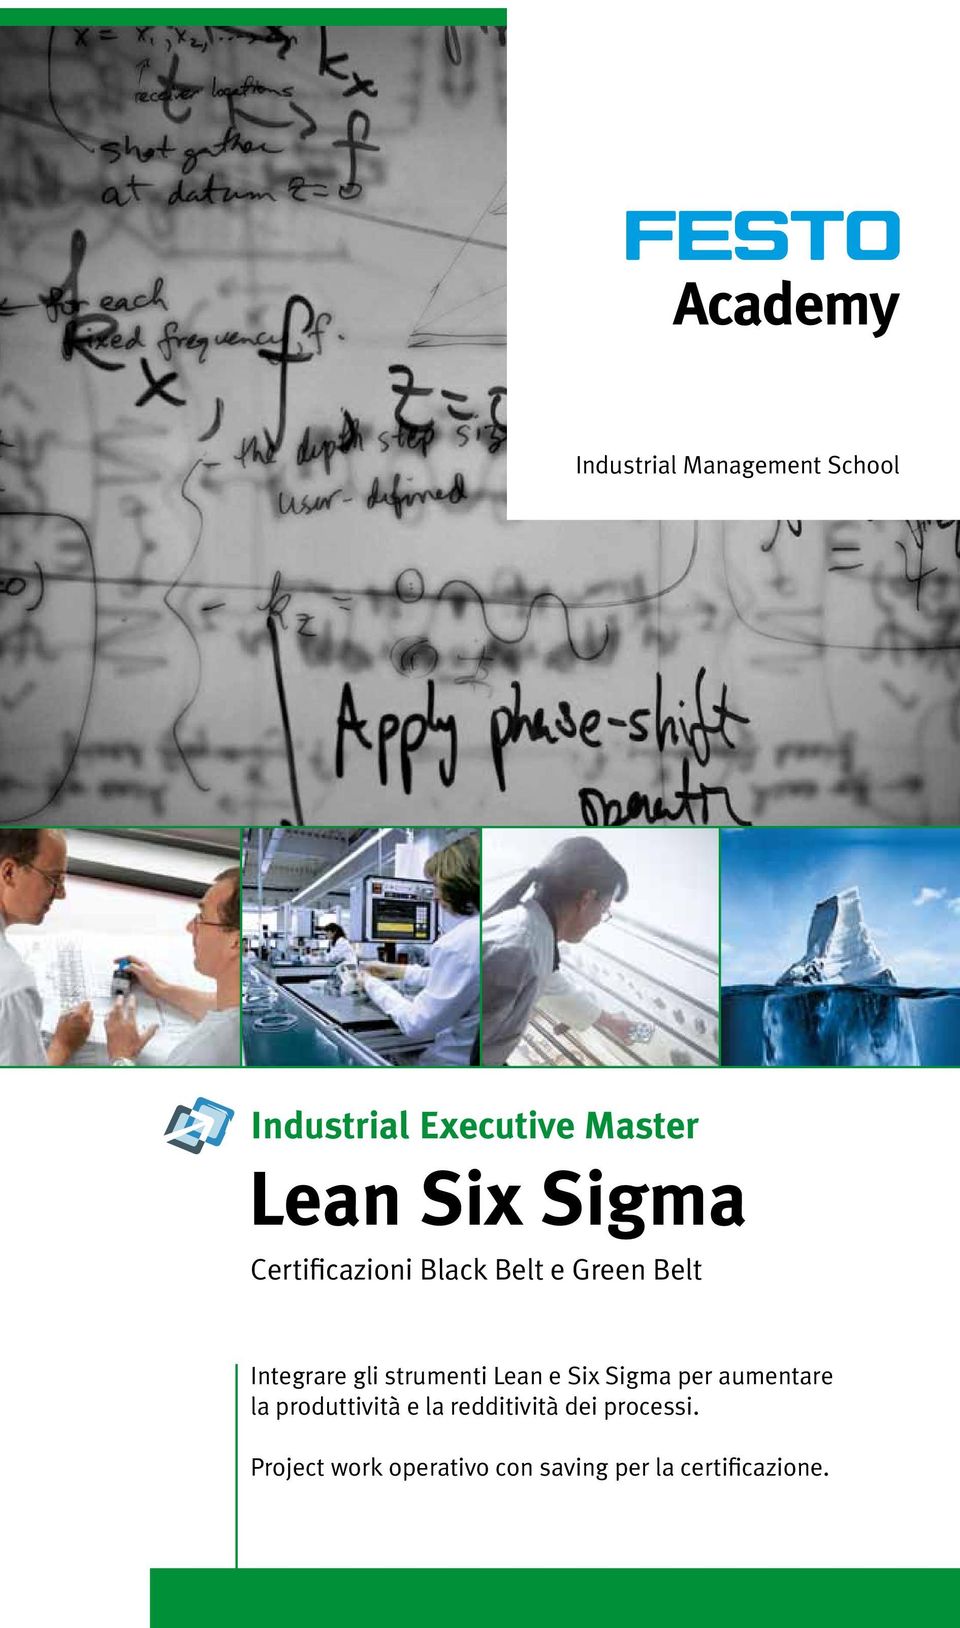 Lean e Six Sigma per aumentare la produttività e la redditività